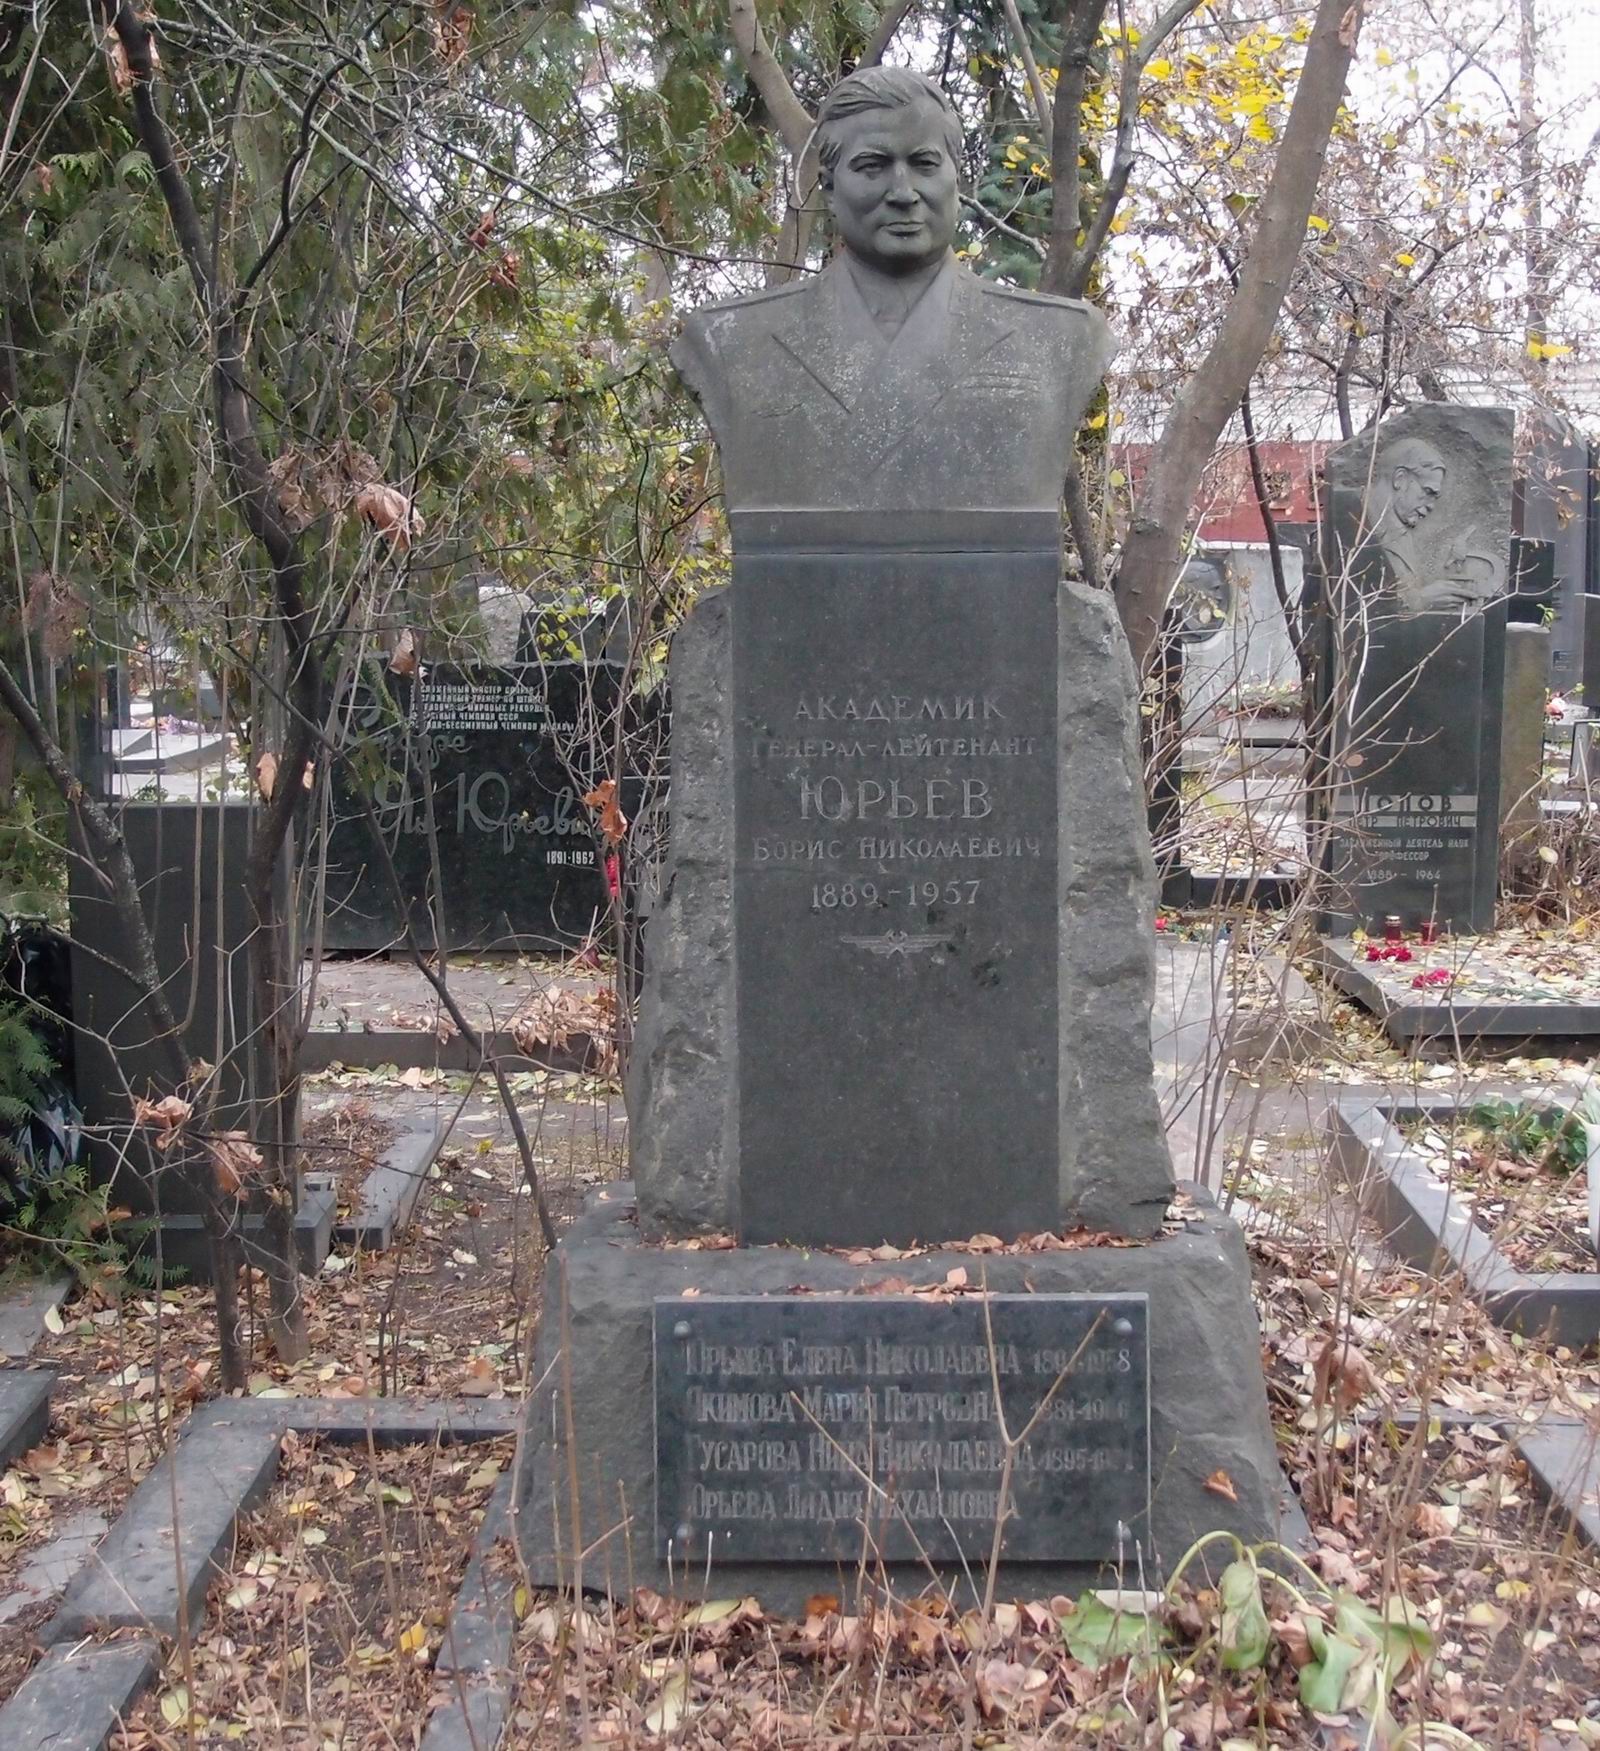 Памятник на могиле Юрьева Б.Н. (1889-1957), ск. М.Оленин, на Новодевичьем кладбище (3-53-10). Нажмите левую кнопку мыши чтобы увидеть фрагмент памятника.